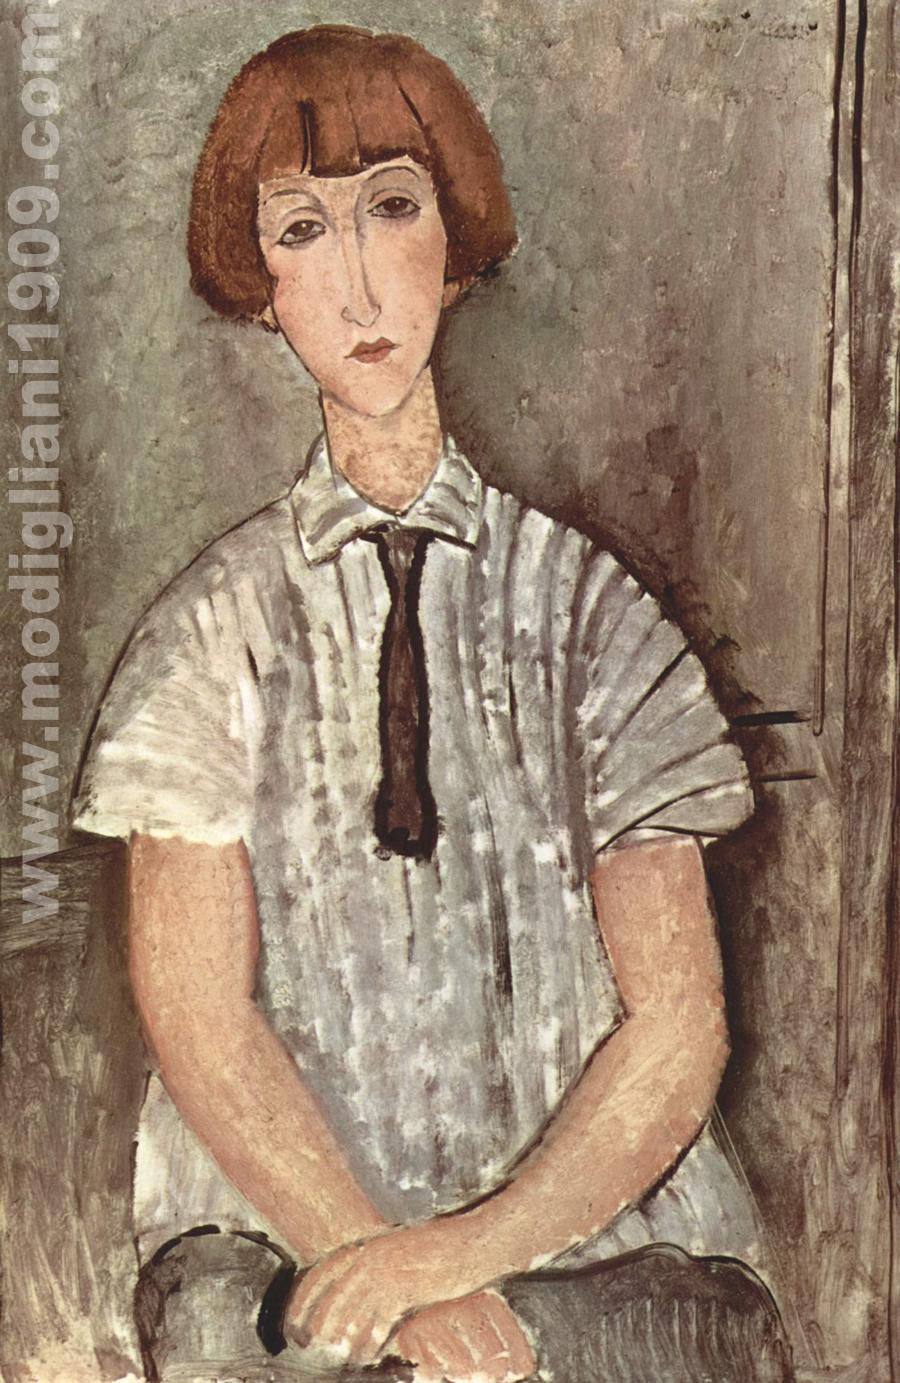 Ragazza con camicetta a righe Amedeo Modigliani 1917